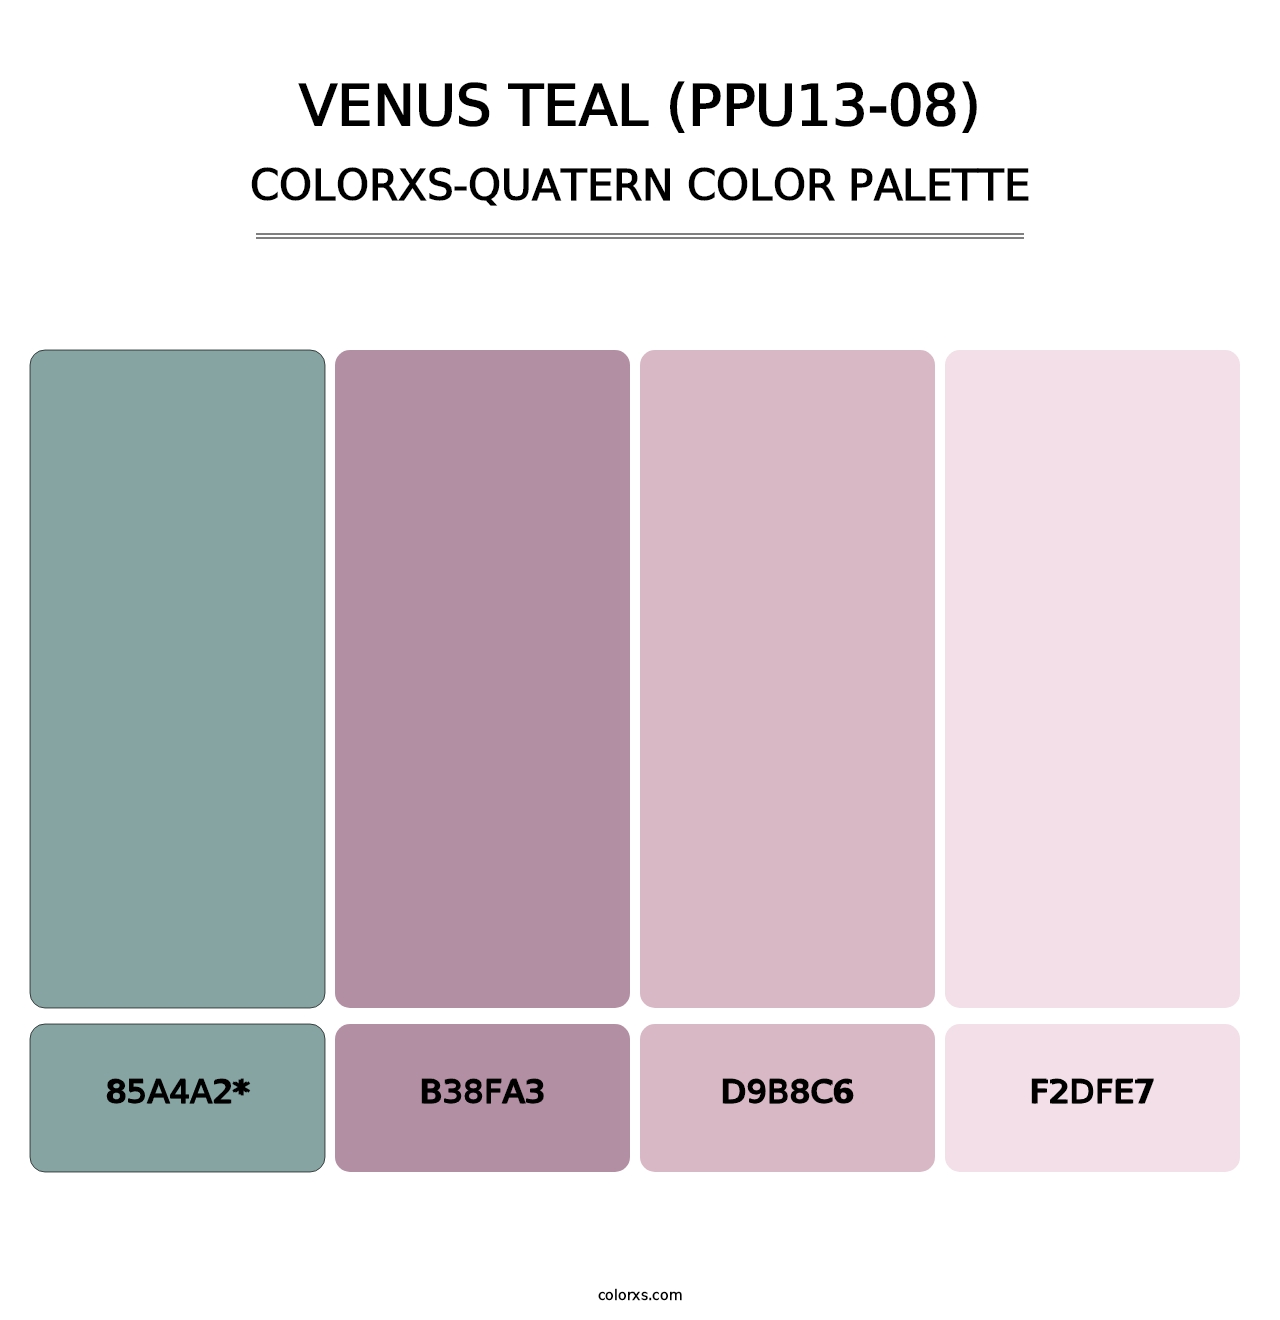 Venus Teal (PPU13-08) - Colorxs Quatern Palette